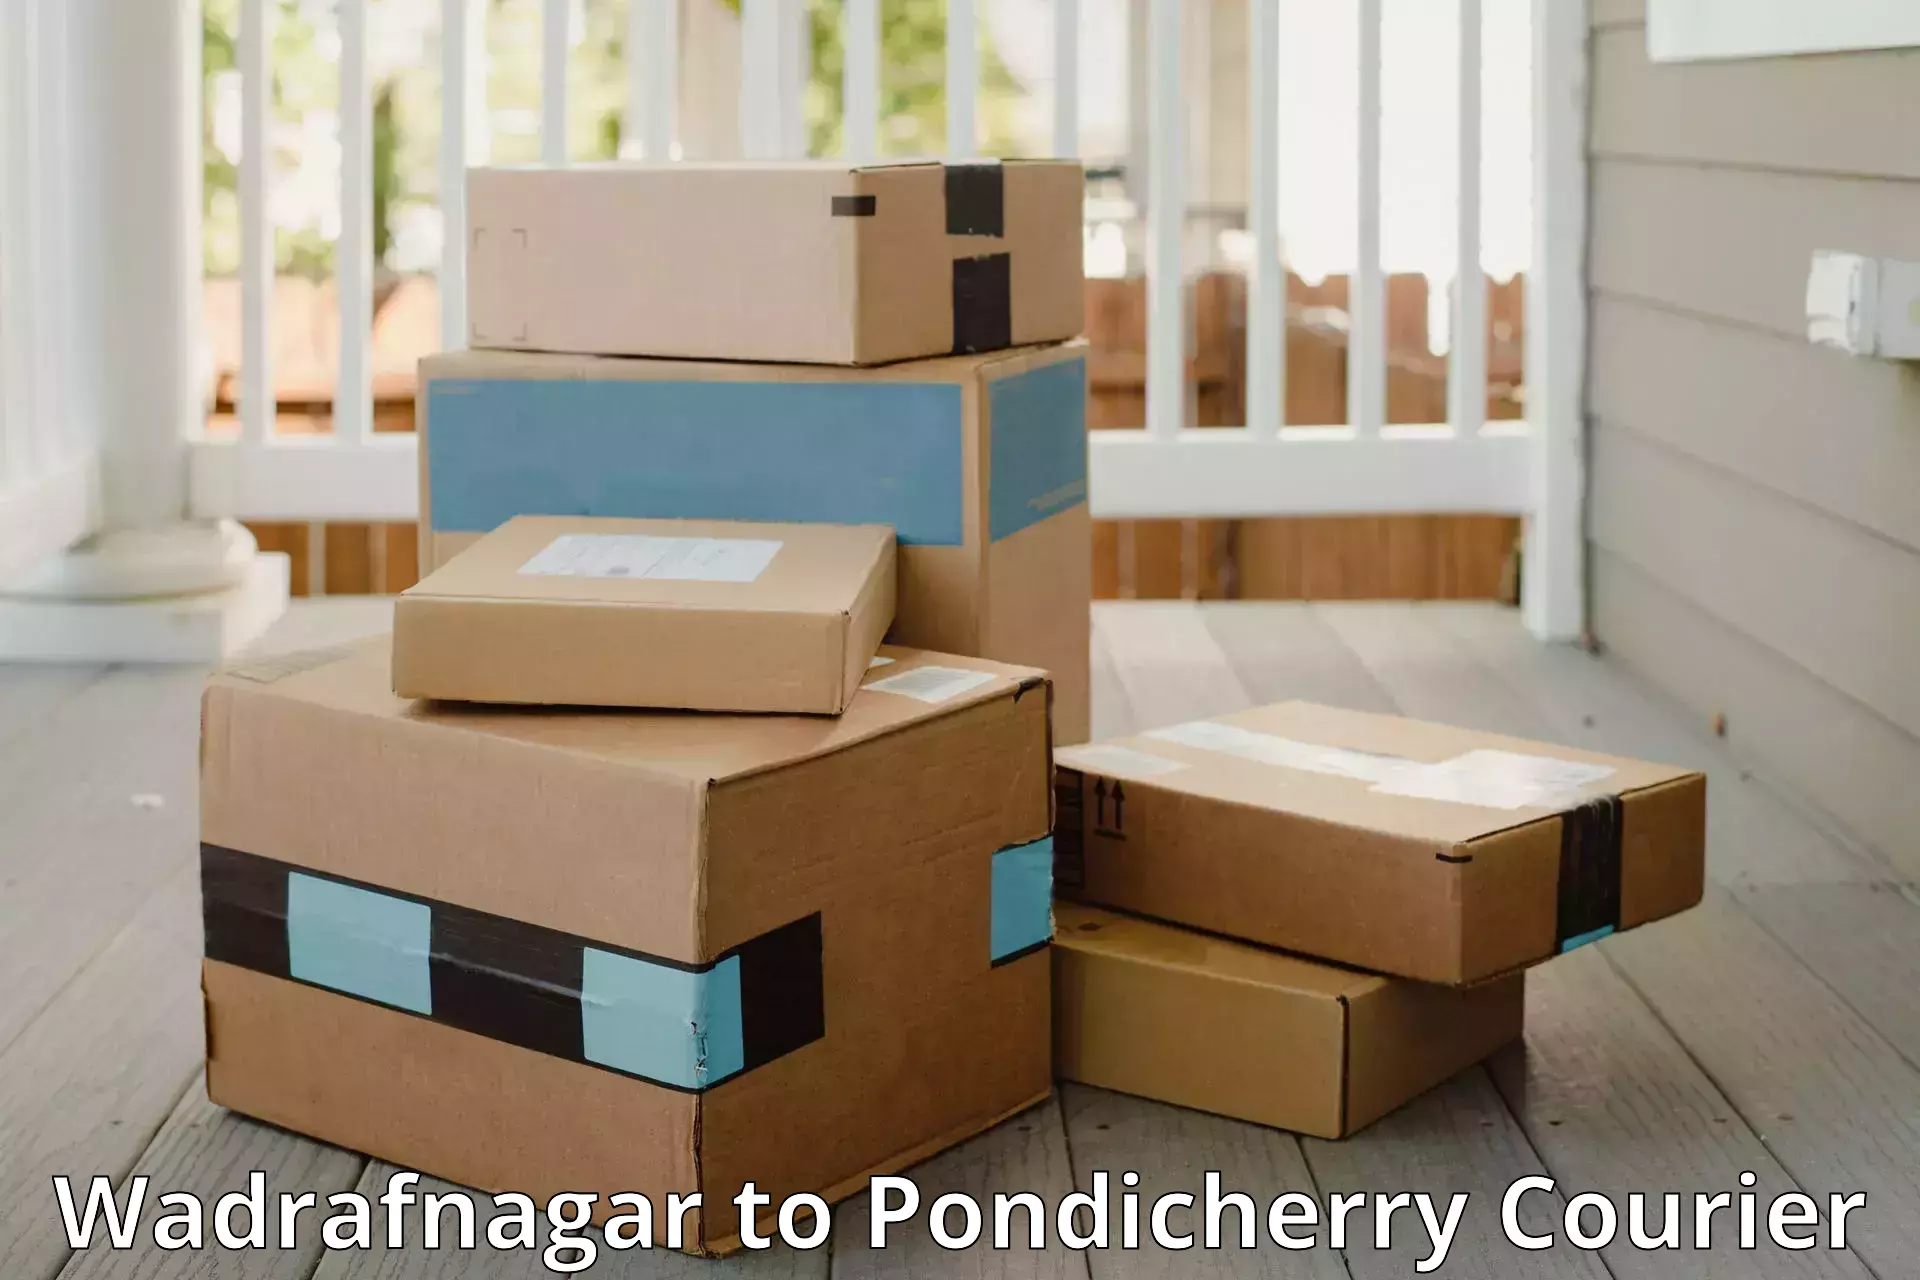 Baggage transport coordination Wadrafnagar to Pondicherry University